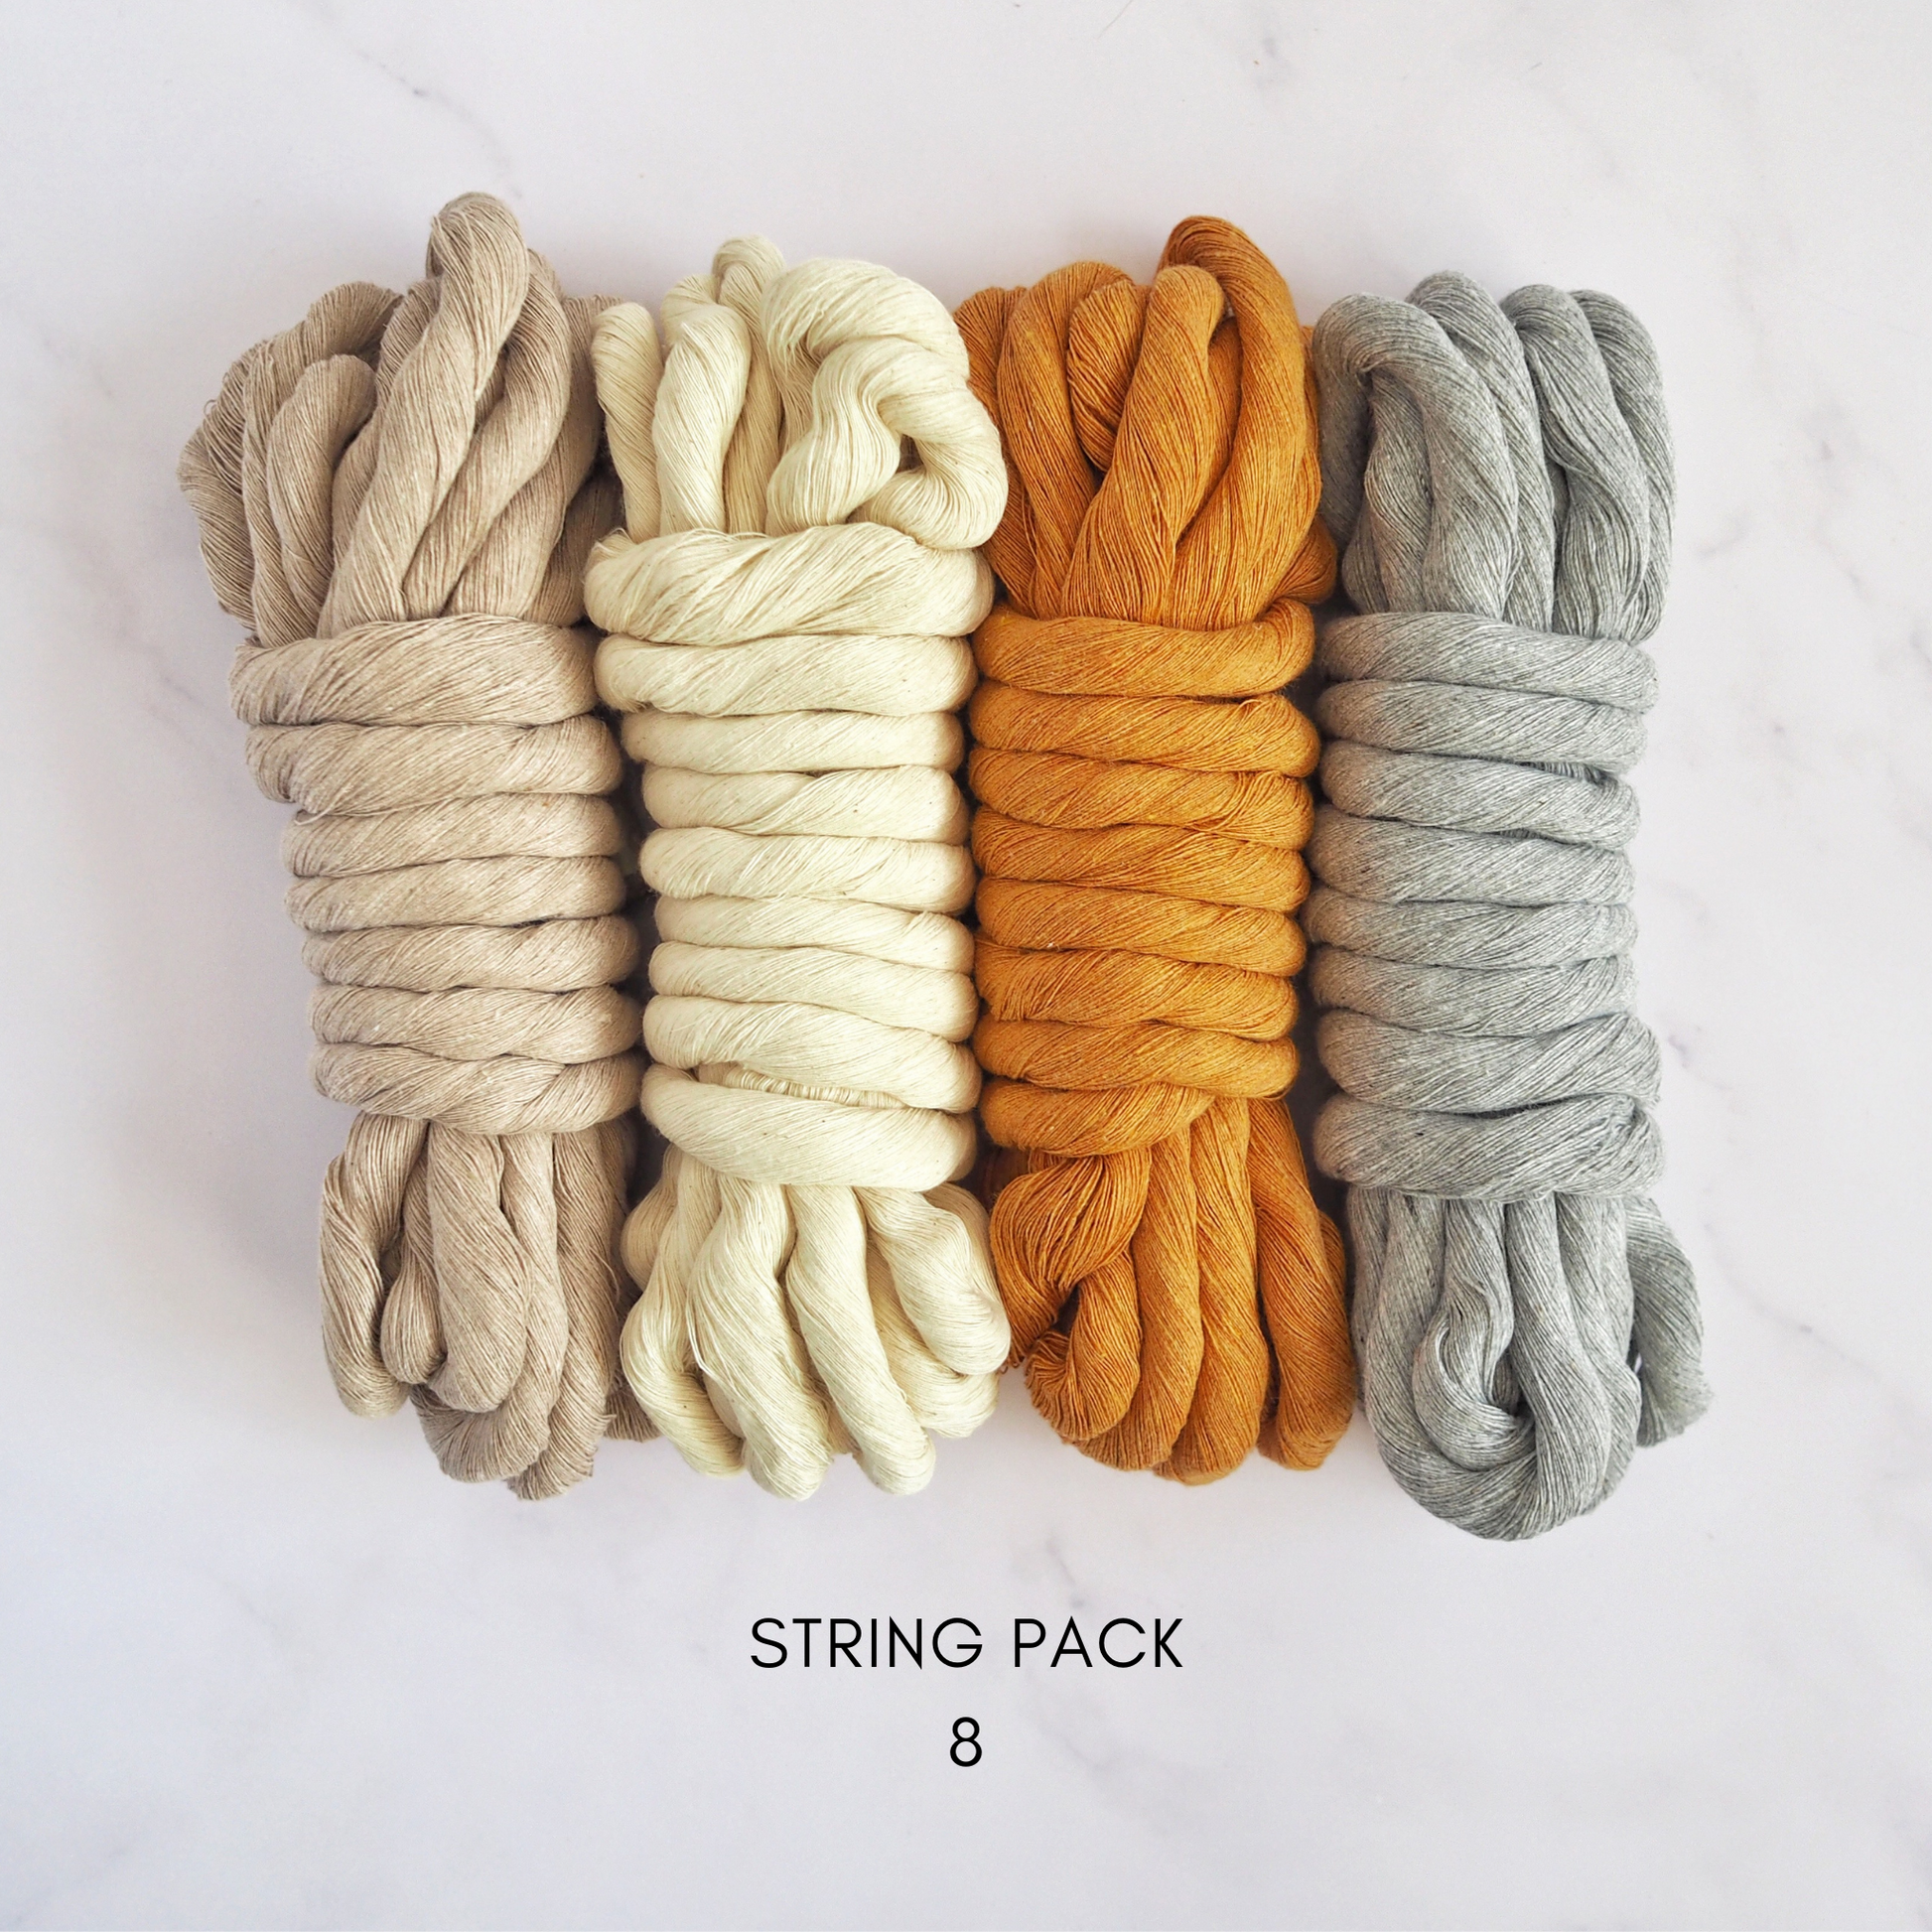 12mm String | Pack 8 The Joyful Studio